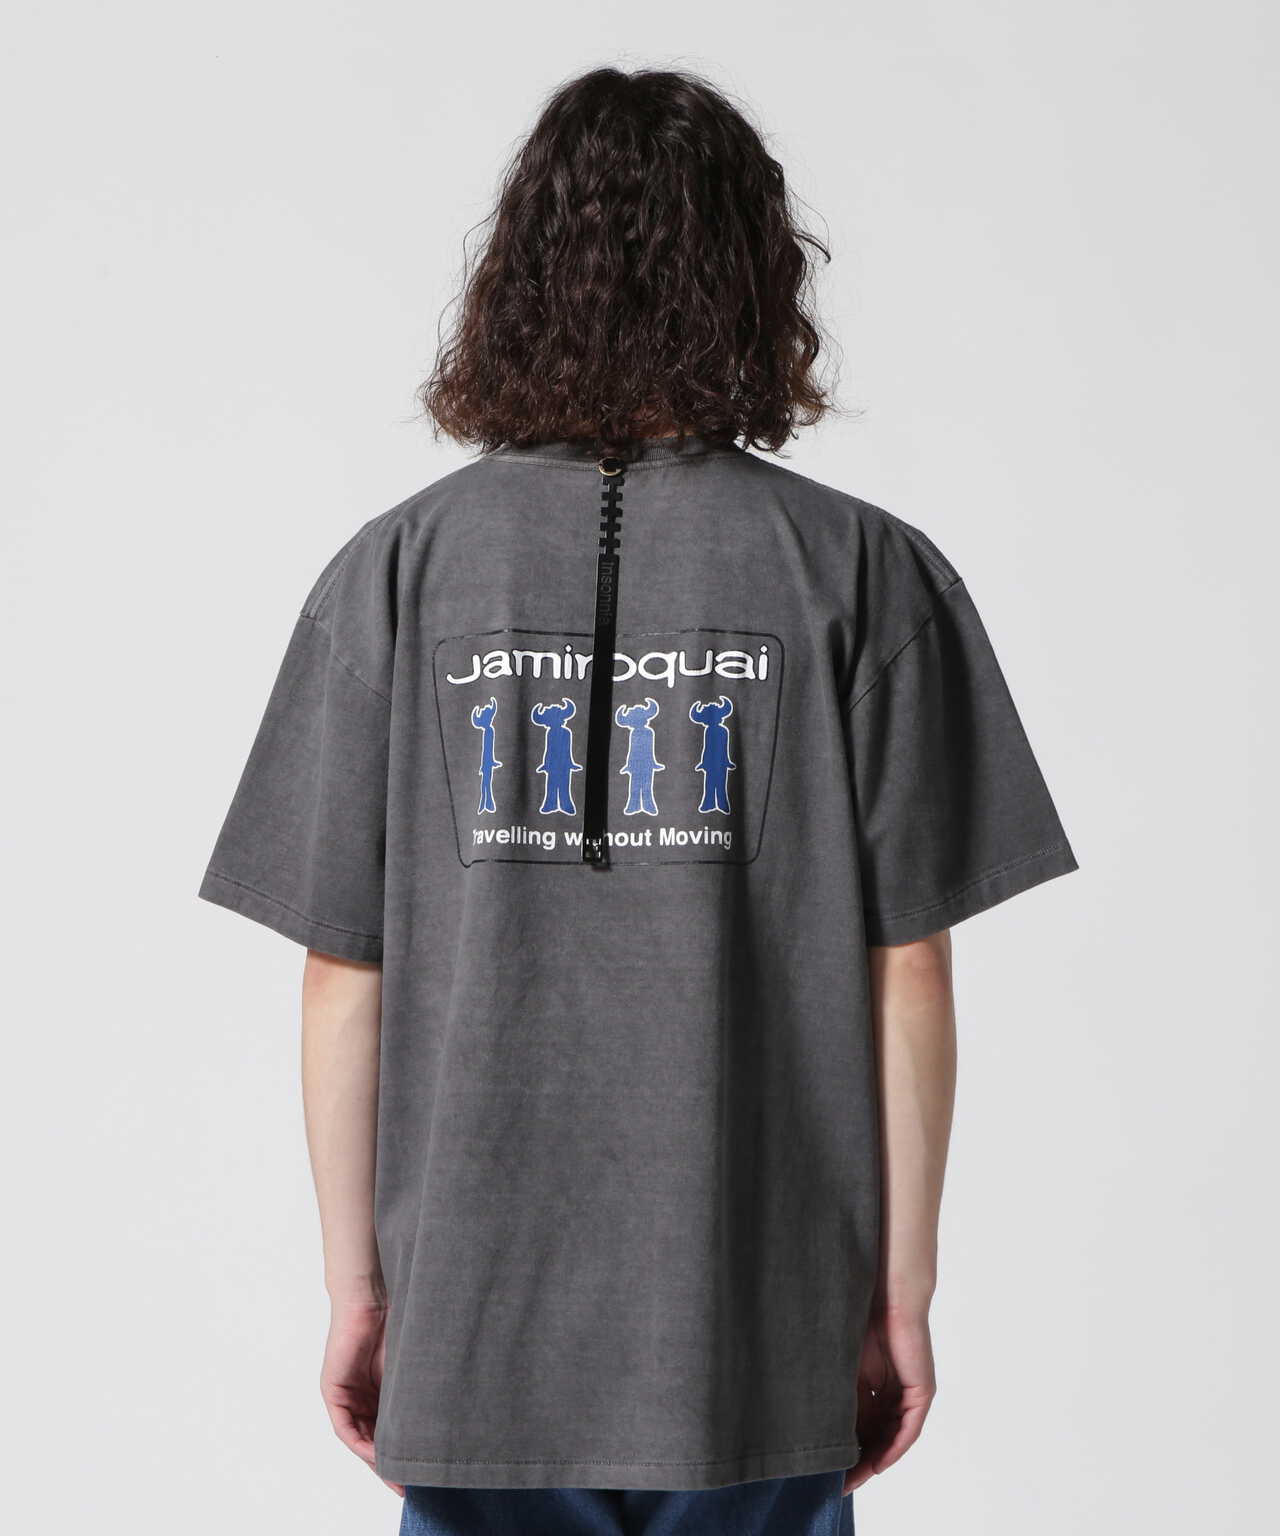 現在完売品ですInsonnia Projects / JAMIROQUAI プリントTシャツ